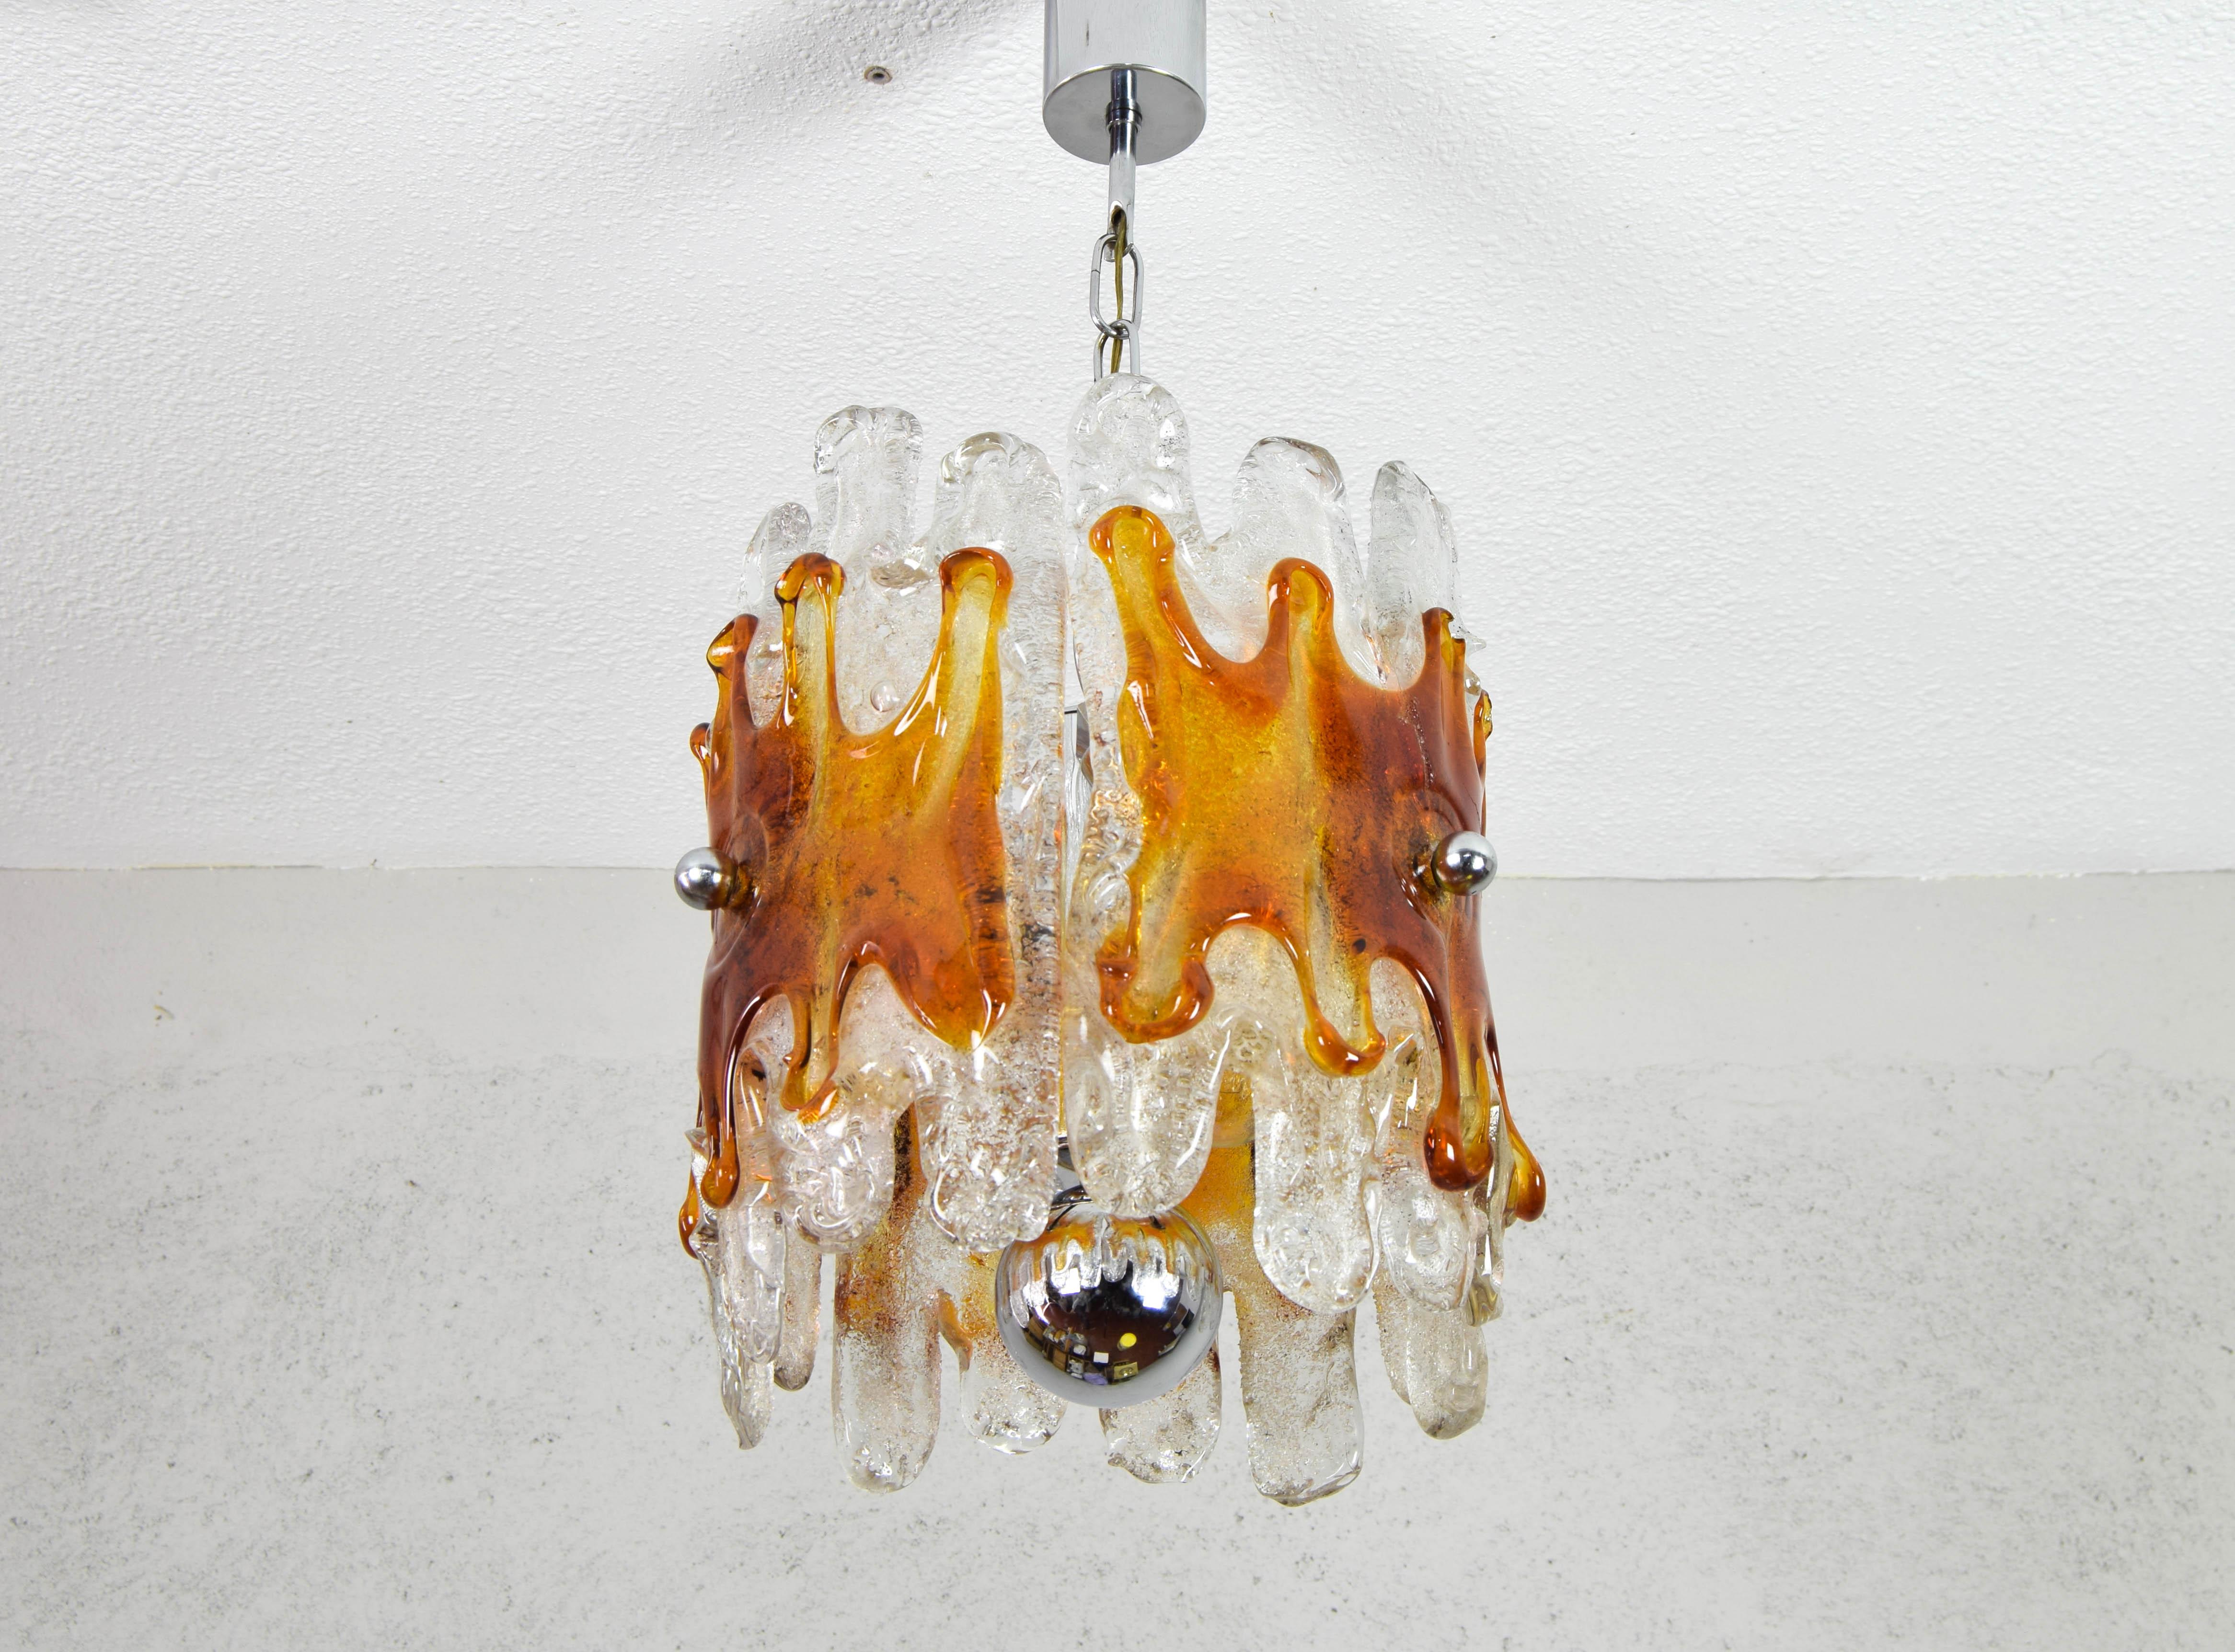 Kronleuchter aus Murano-Glas, hergestellt von Mazzega in Italien in den 1960er Jahren.
Verchromter Stahlkörper mit drei Leuchtmitteln für E14-Glühbirnen, die unten von einer verchromten Stahlkugel abgeschlossen werden. In jedem der drei Arme ist